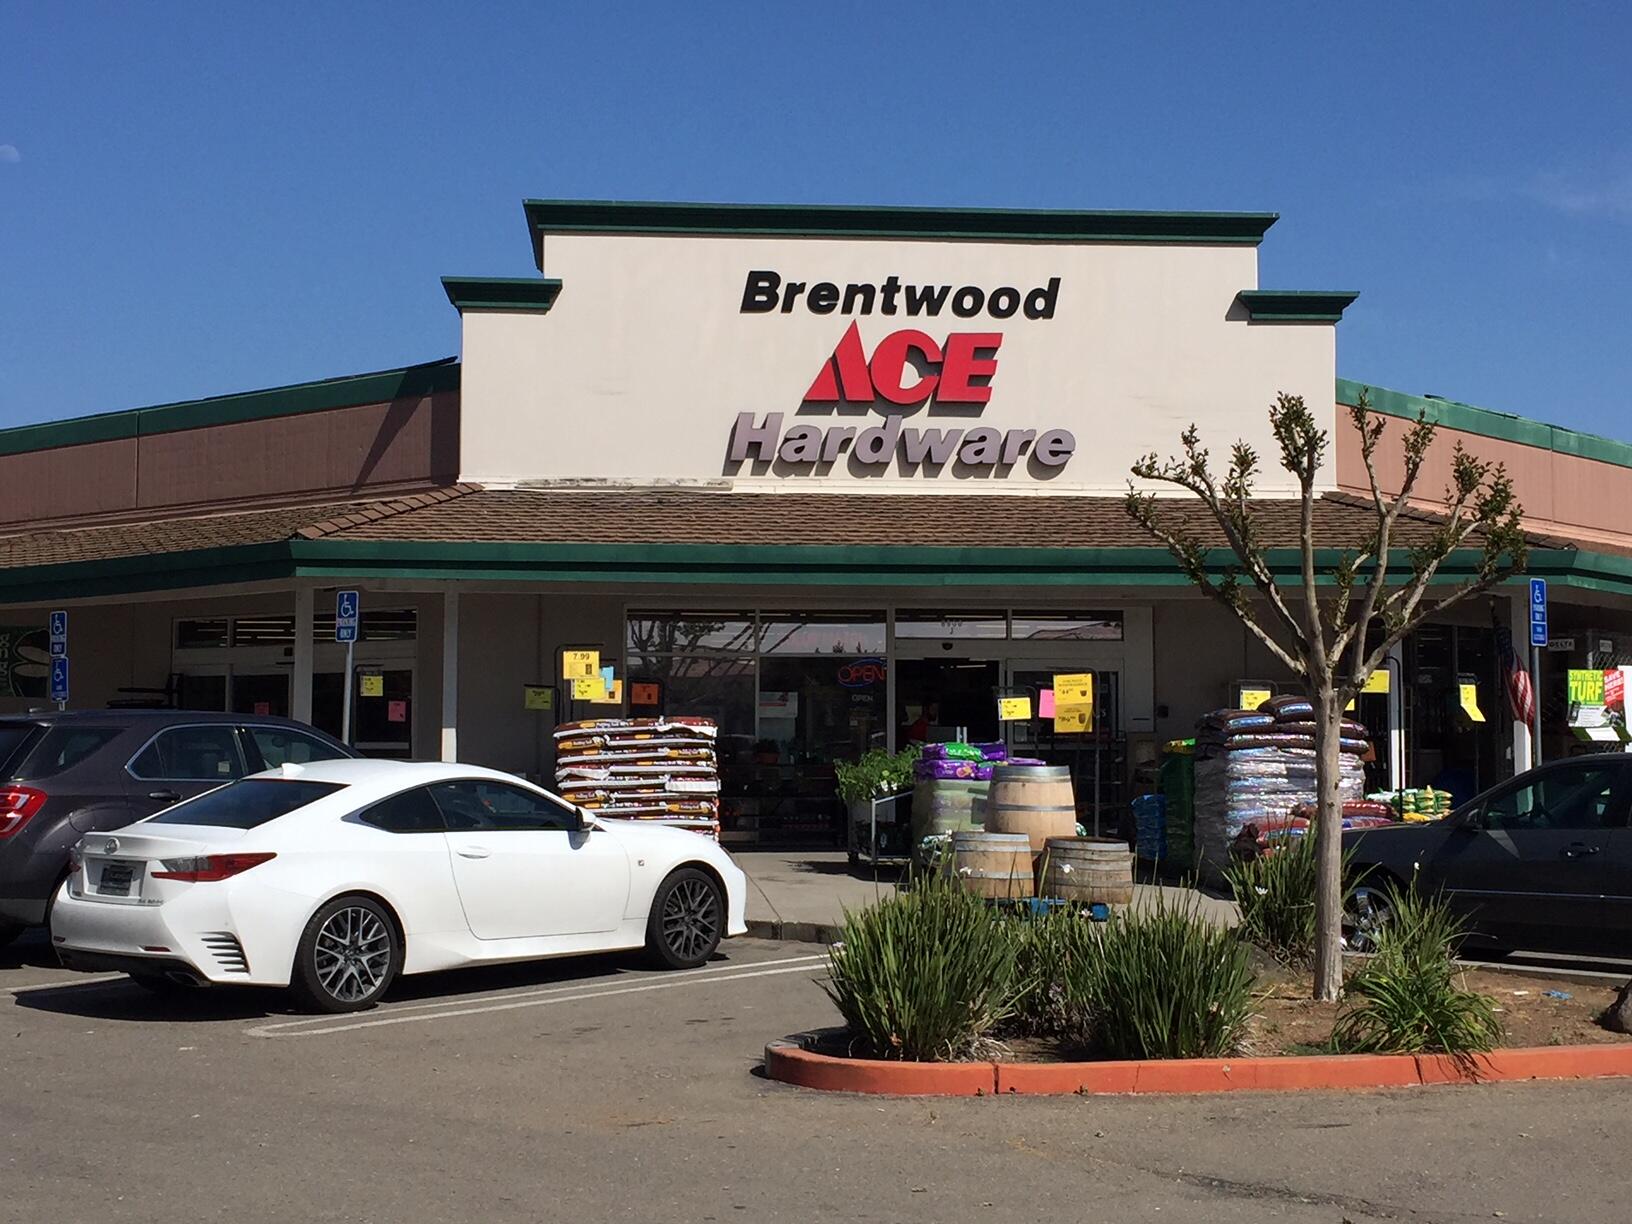 Brentwood Ace Hardware - Brentwood, CA - Nextdoor